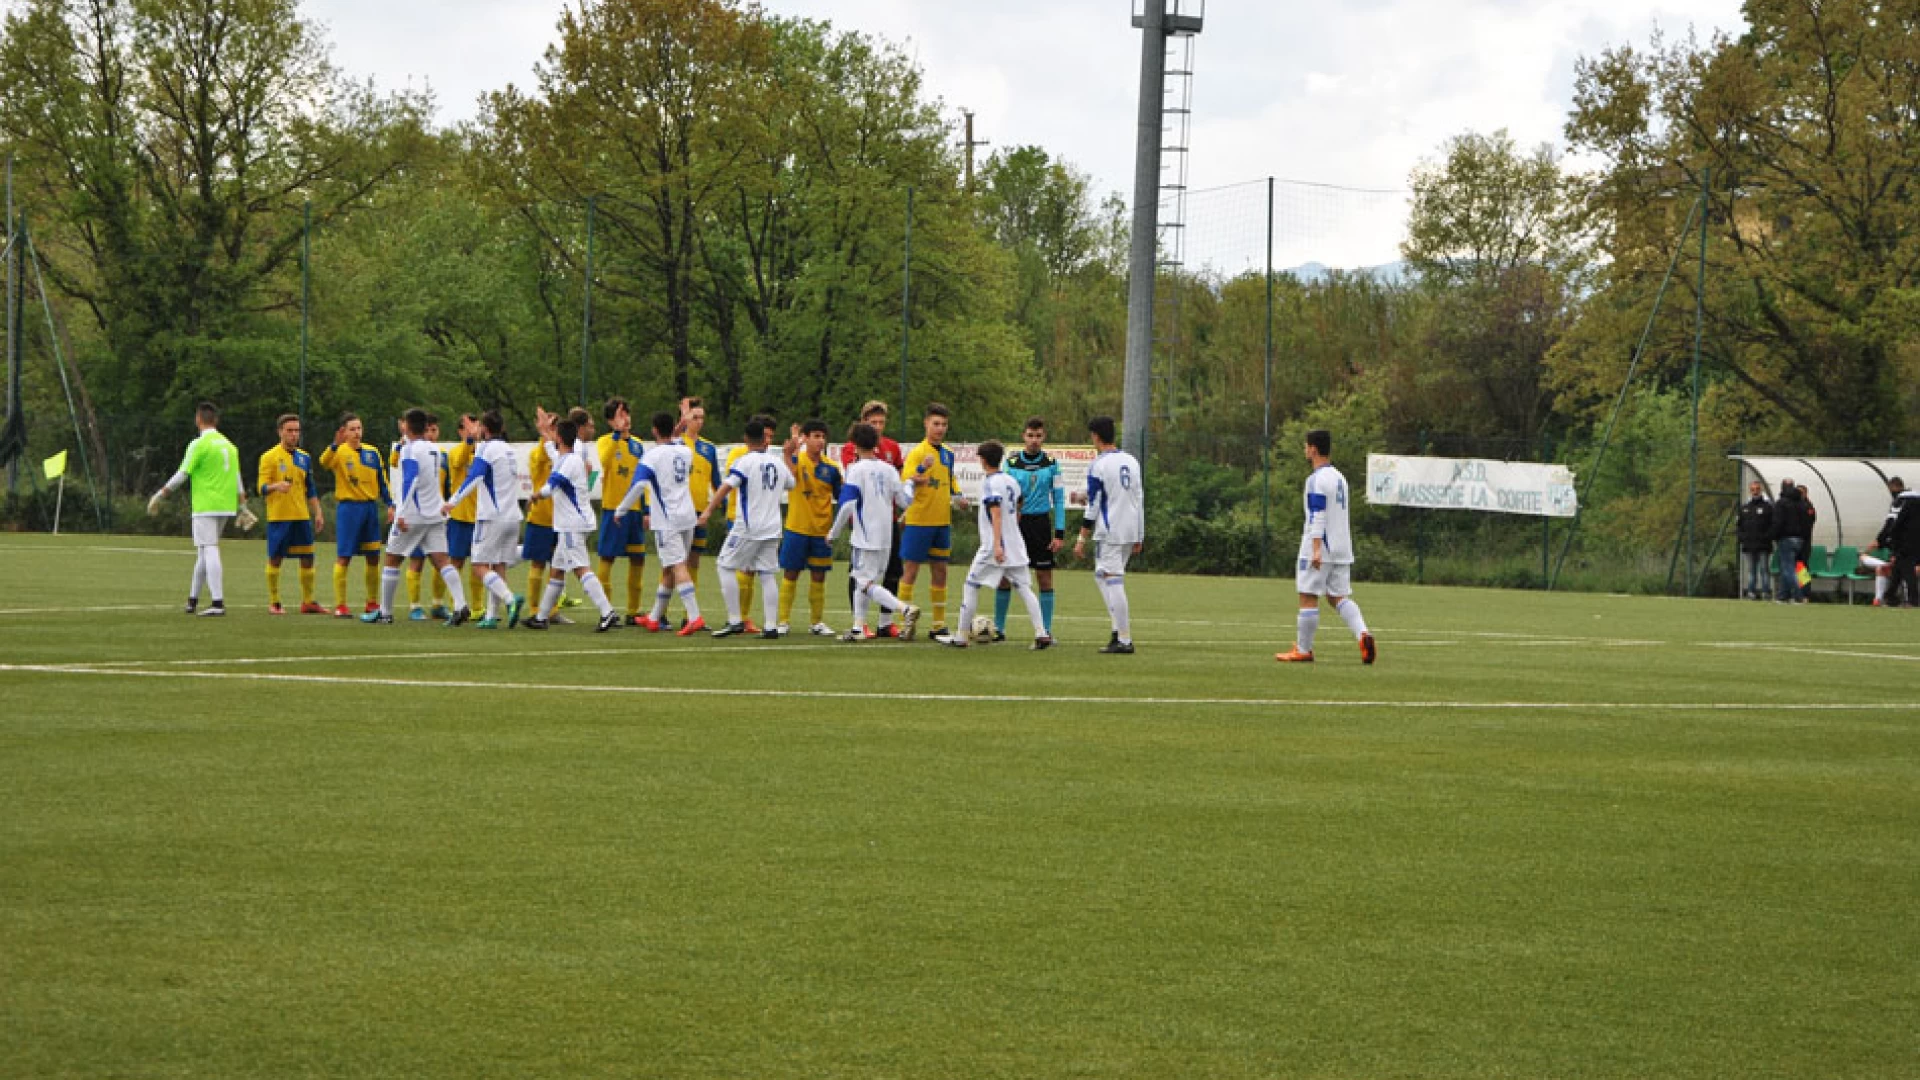 Calcio giovanile: finisce l’avventura in Molise Cup per i giovanissimi dell’Asd Boys Roccaravindola. Rinviata la gara degli allievi.